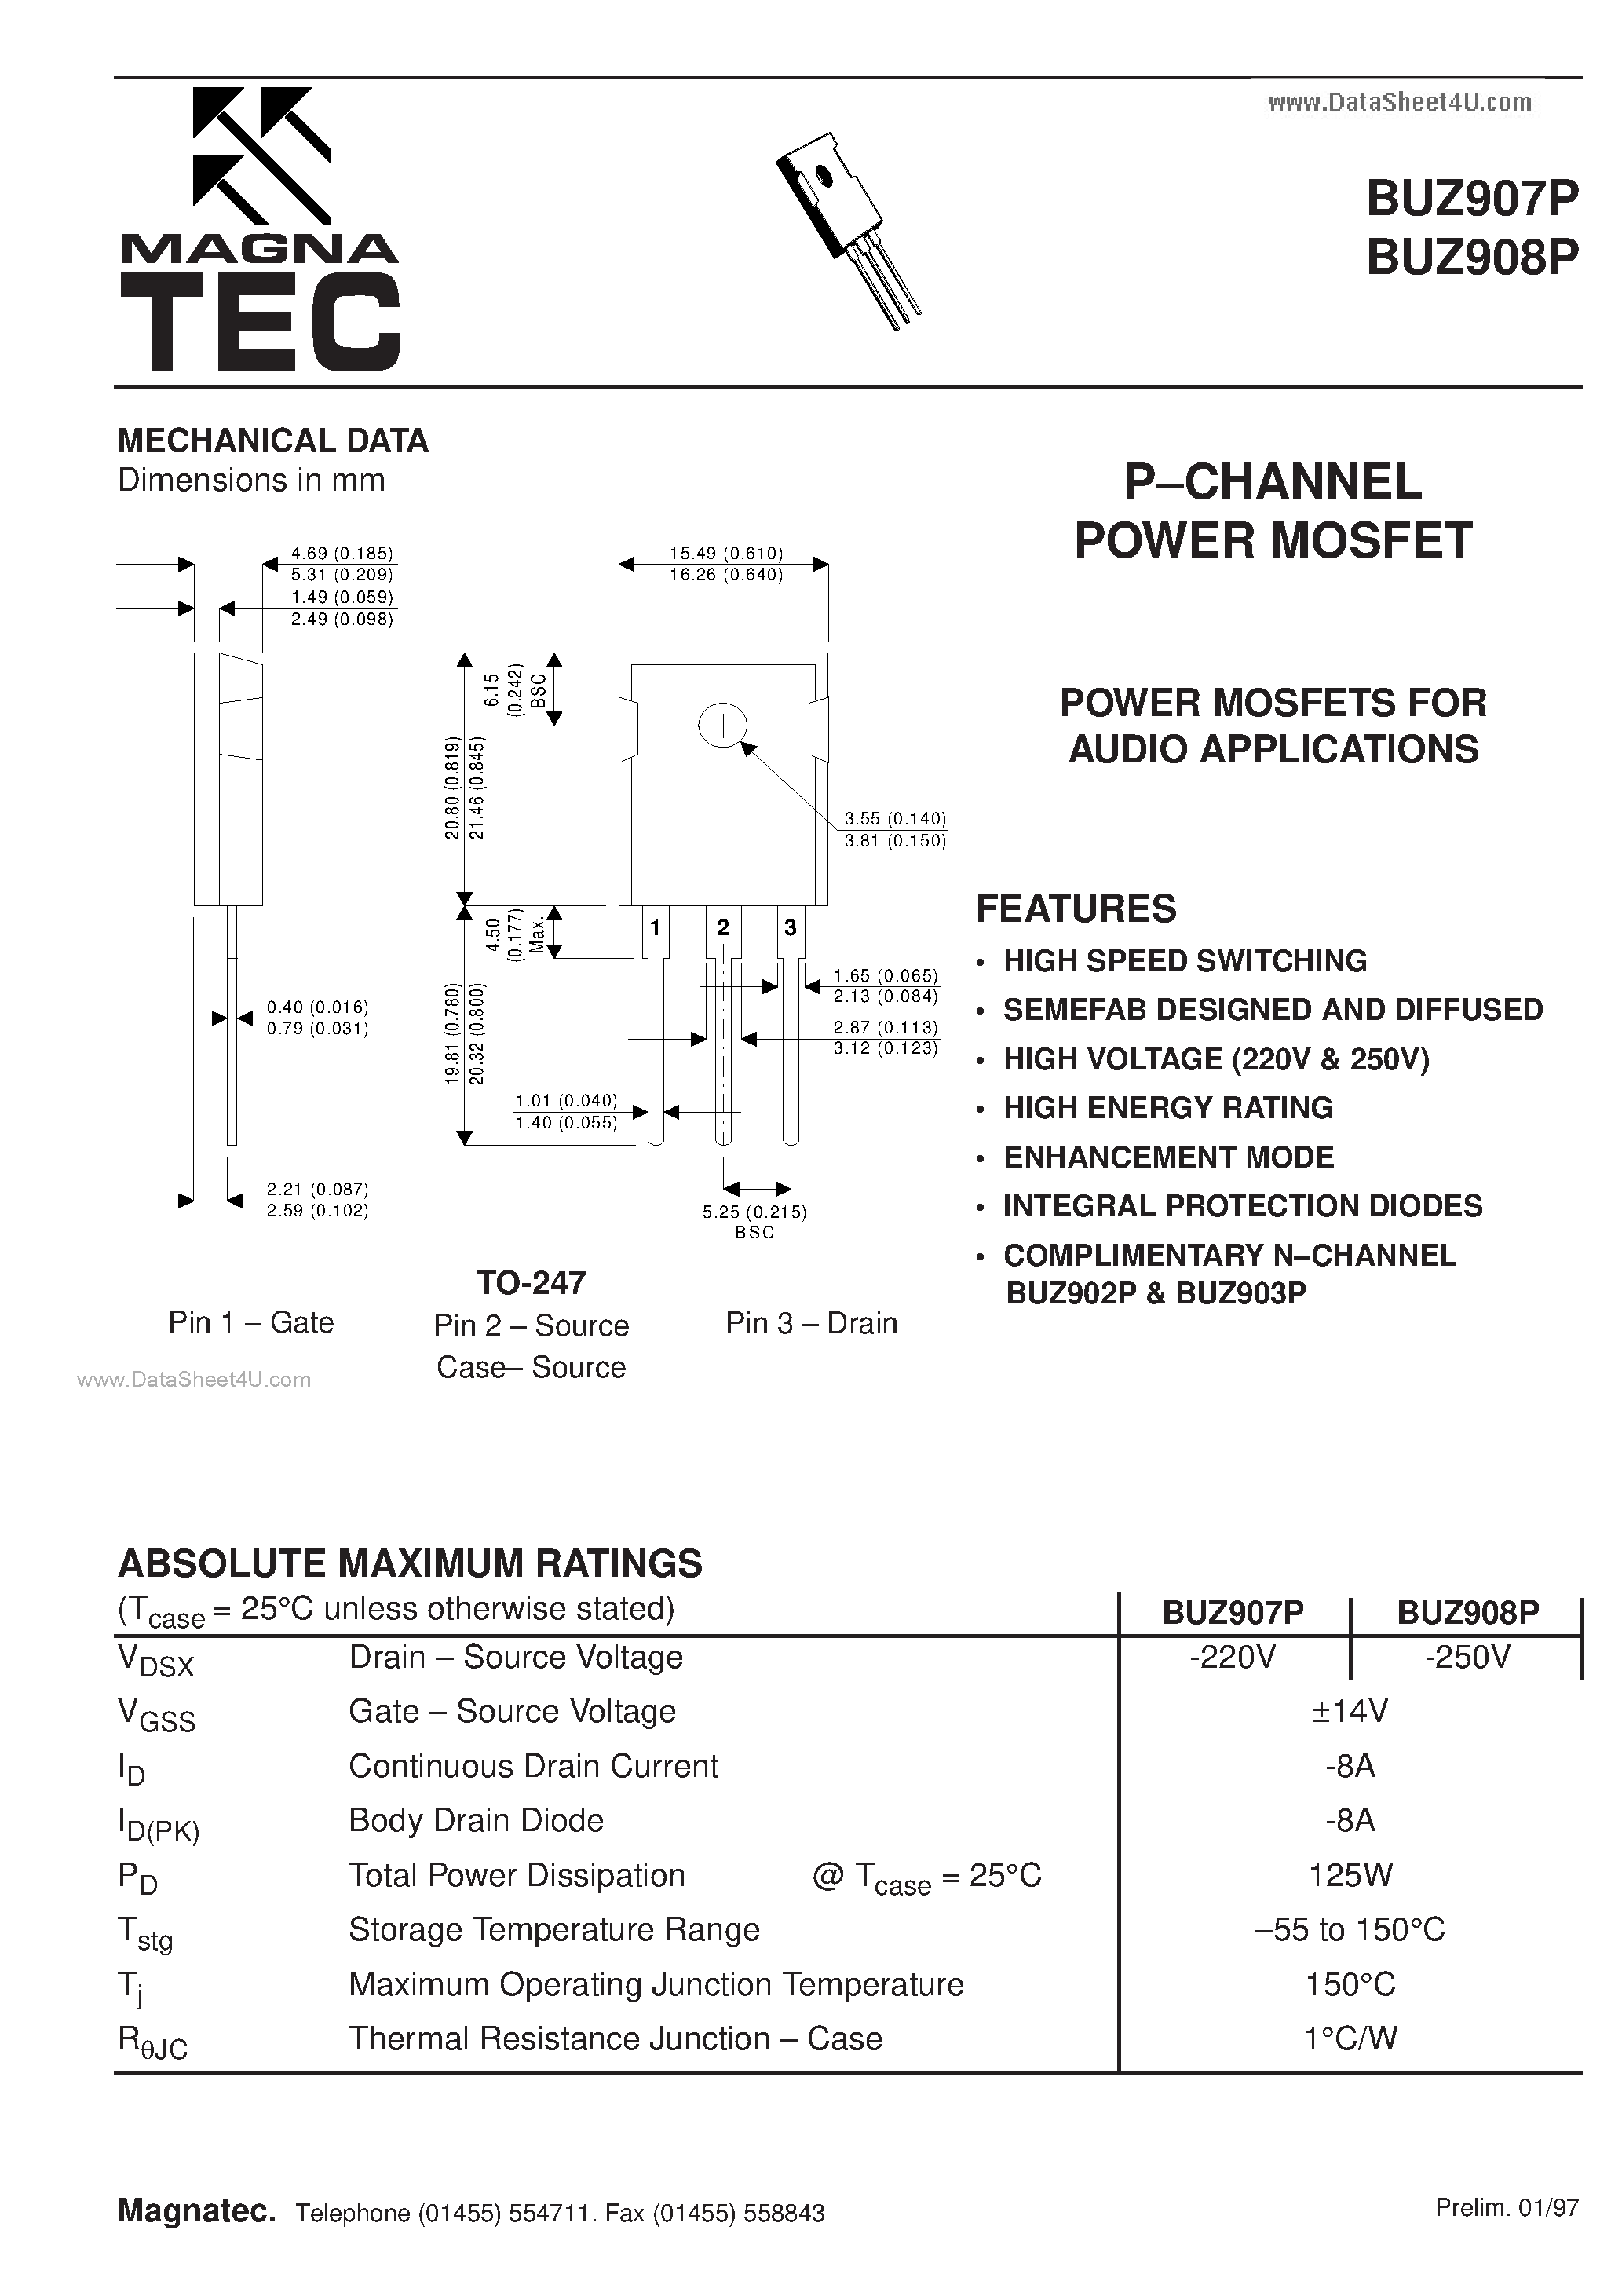 Даташит BUZ907P - (BUZ907P / BUZ908P) N CHANNEL POWER MOSFET страница 1